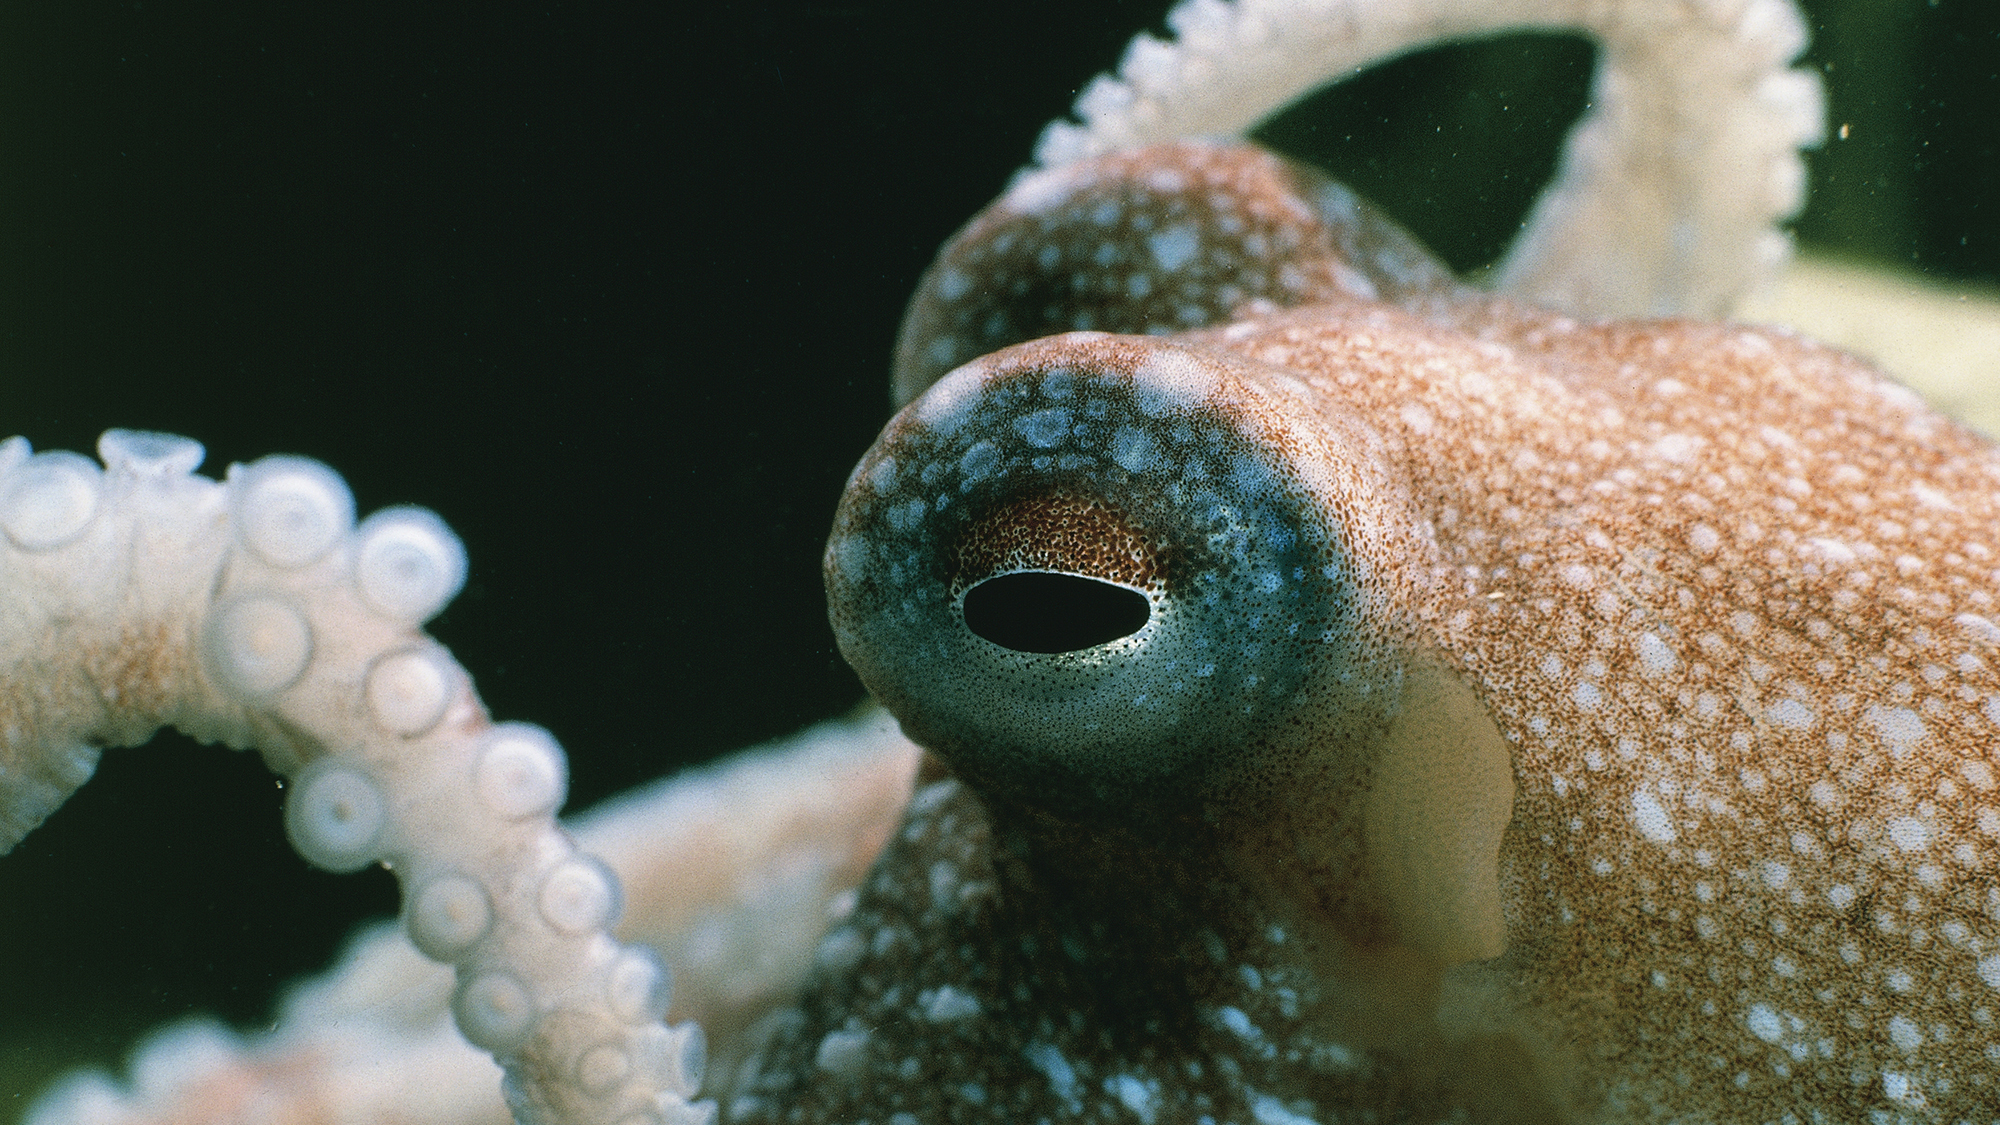 a close-up of an octopus eye